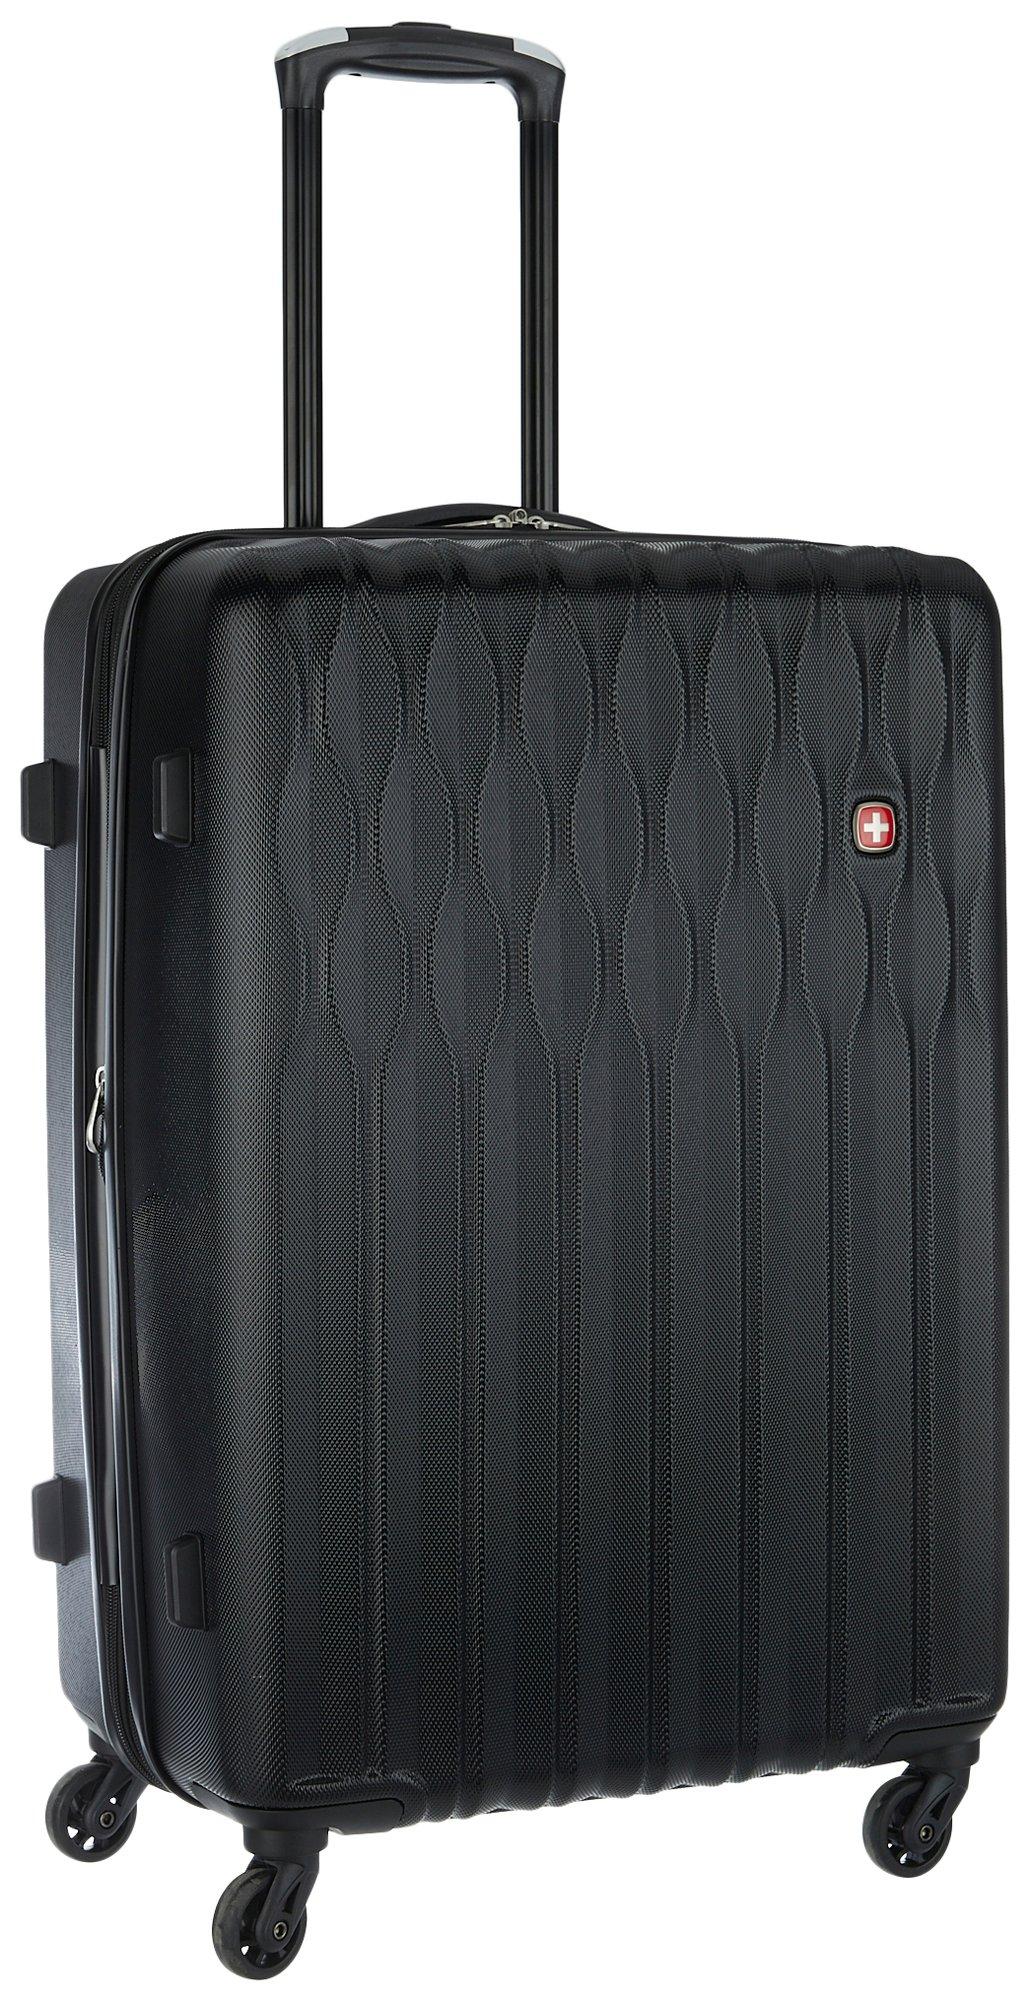 24'' 8018 Expandable Hardside Spinner Luggage